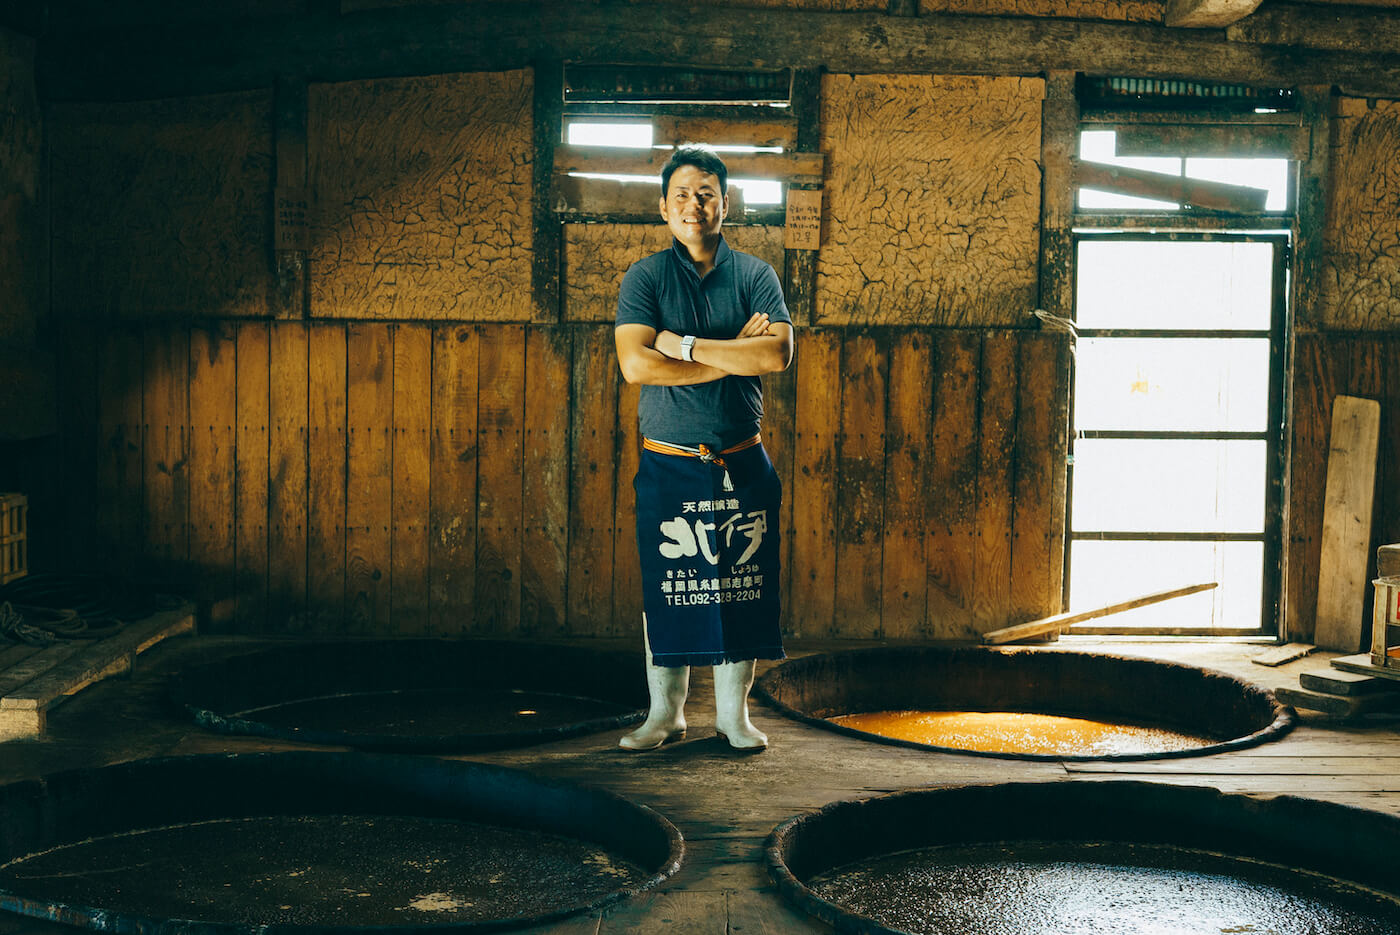 Kohji Yamagami - Kitai Shoyu, 山上弘司 - 明治30年の創業から「本物」の醤油づくりを守る北伊醤油6代目